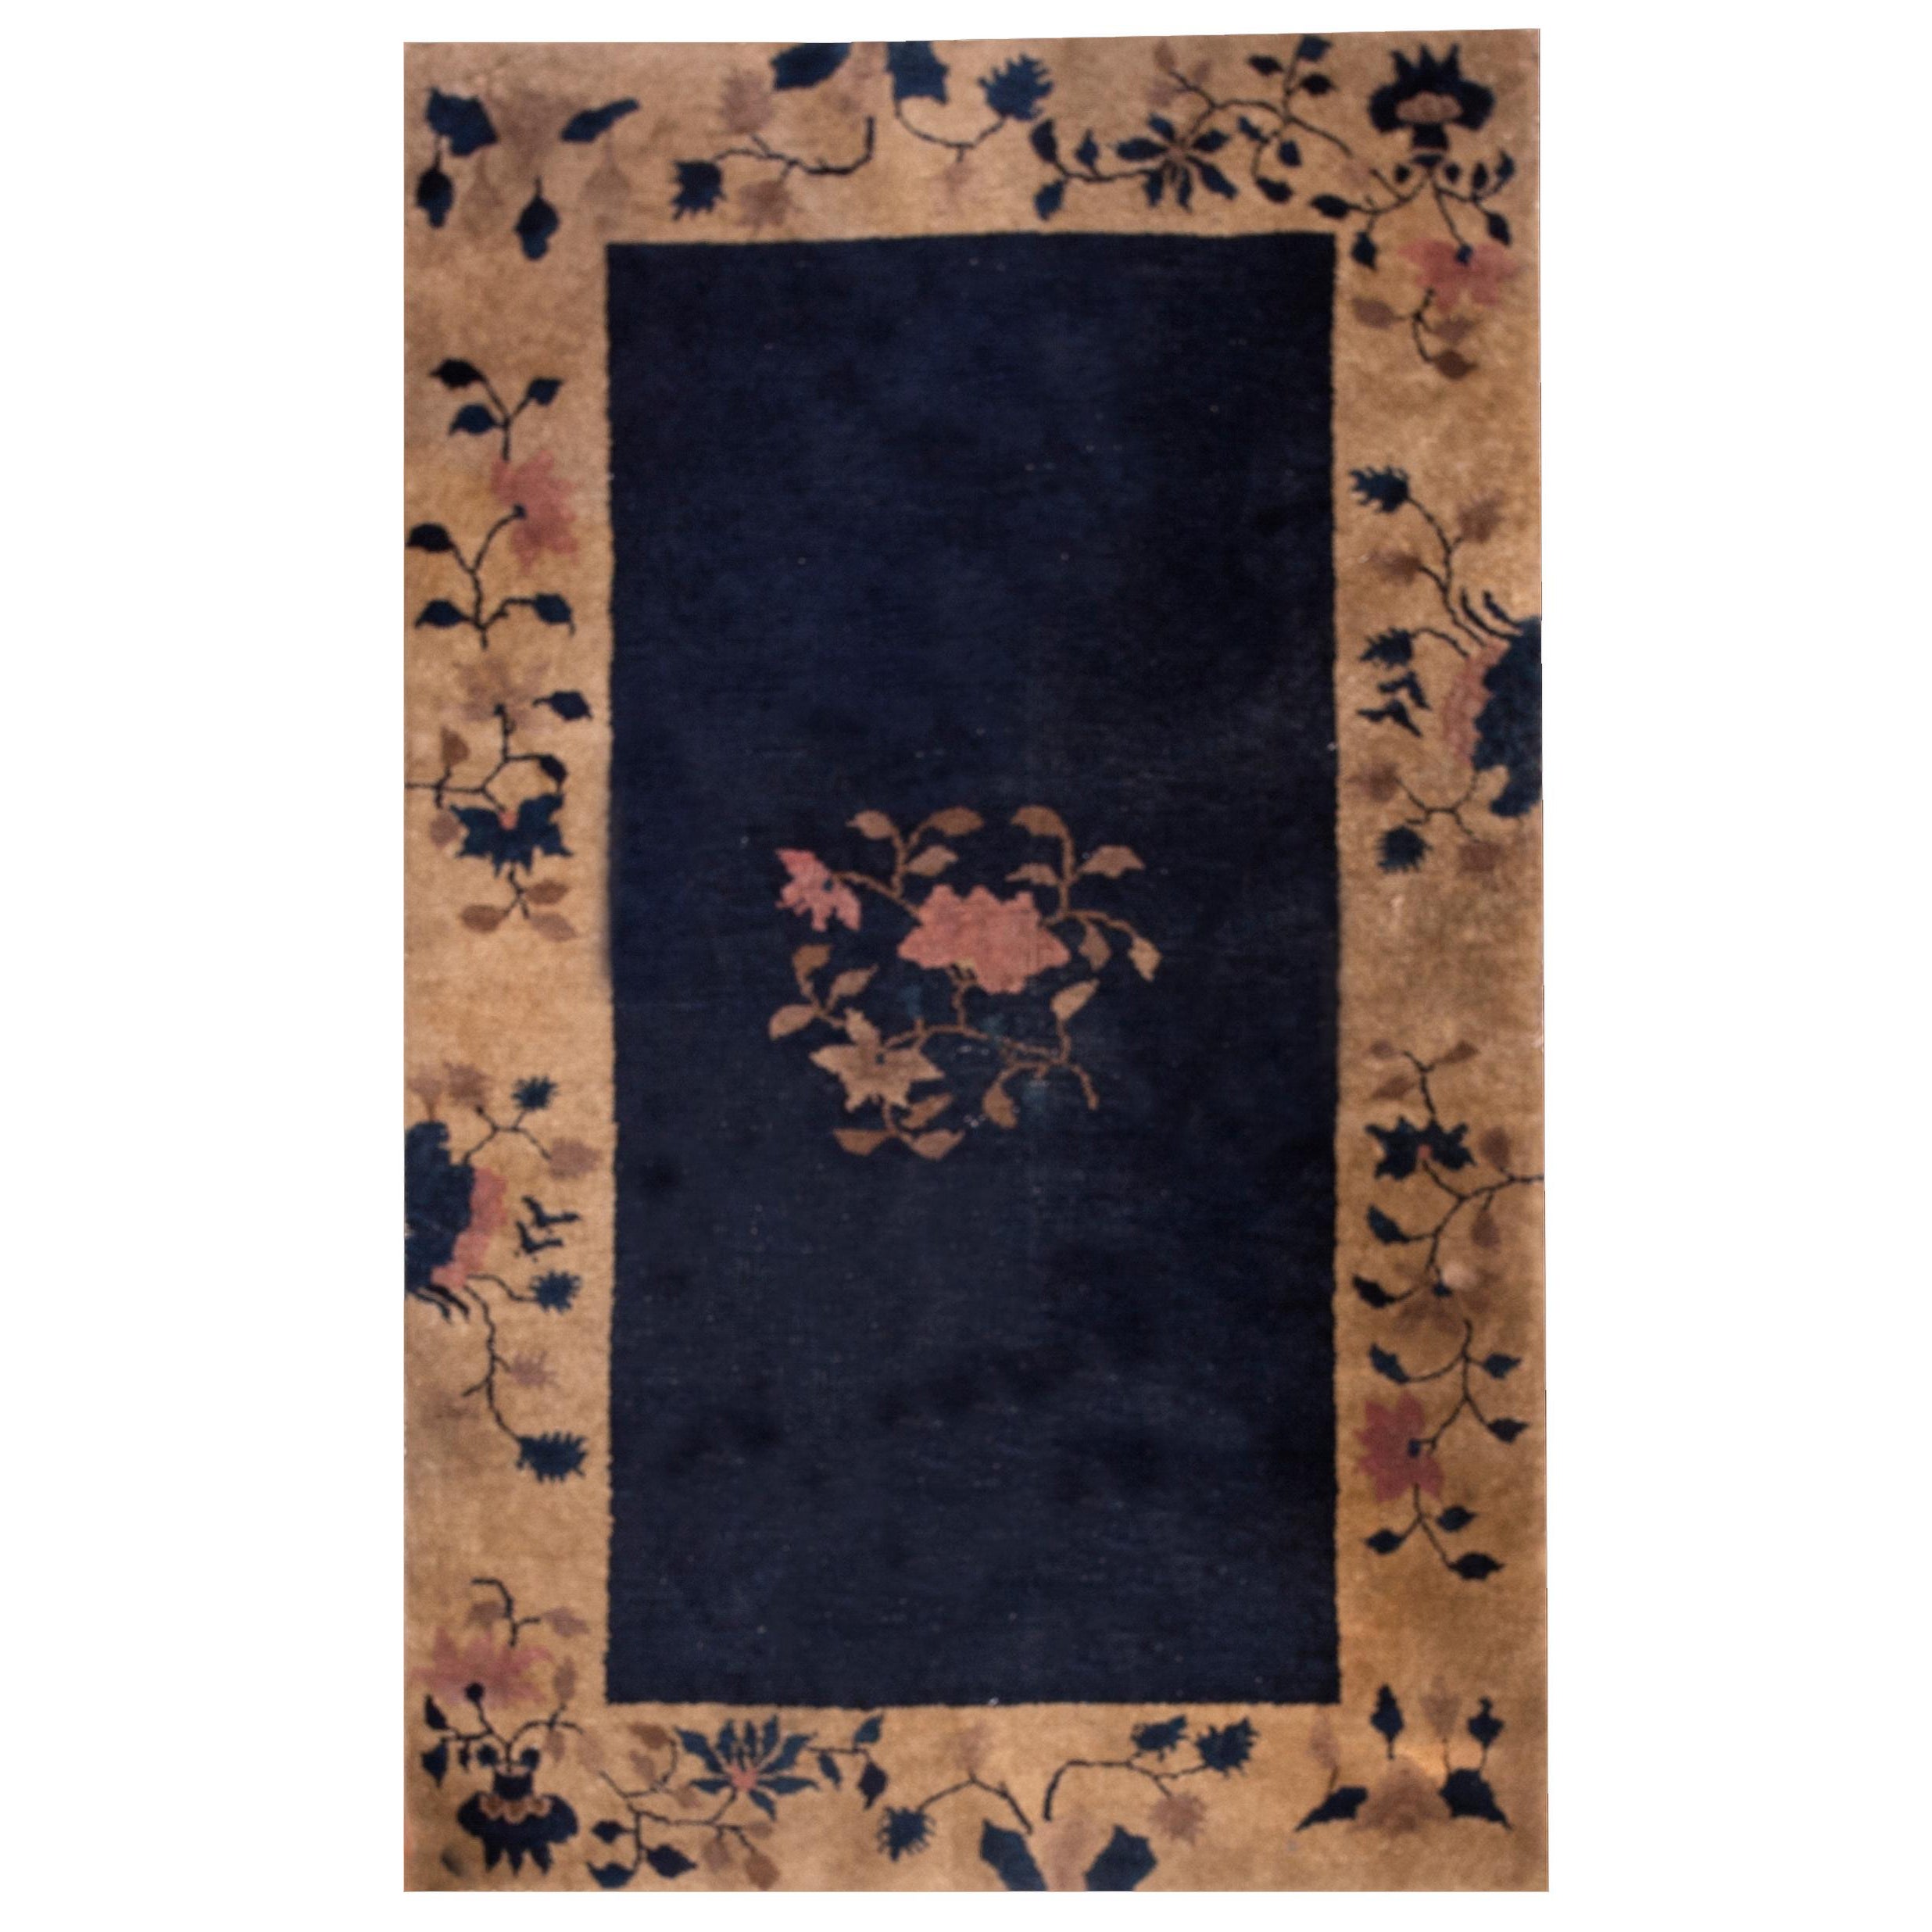 Chinesischer Art-déco-Teppich aus den 1920er Jahren ( 3' x 5' - 92 x 152 cm)